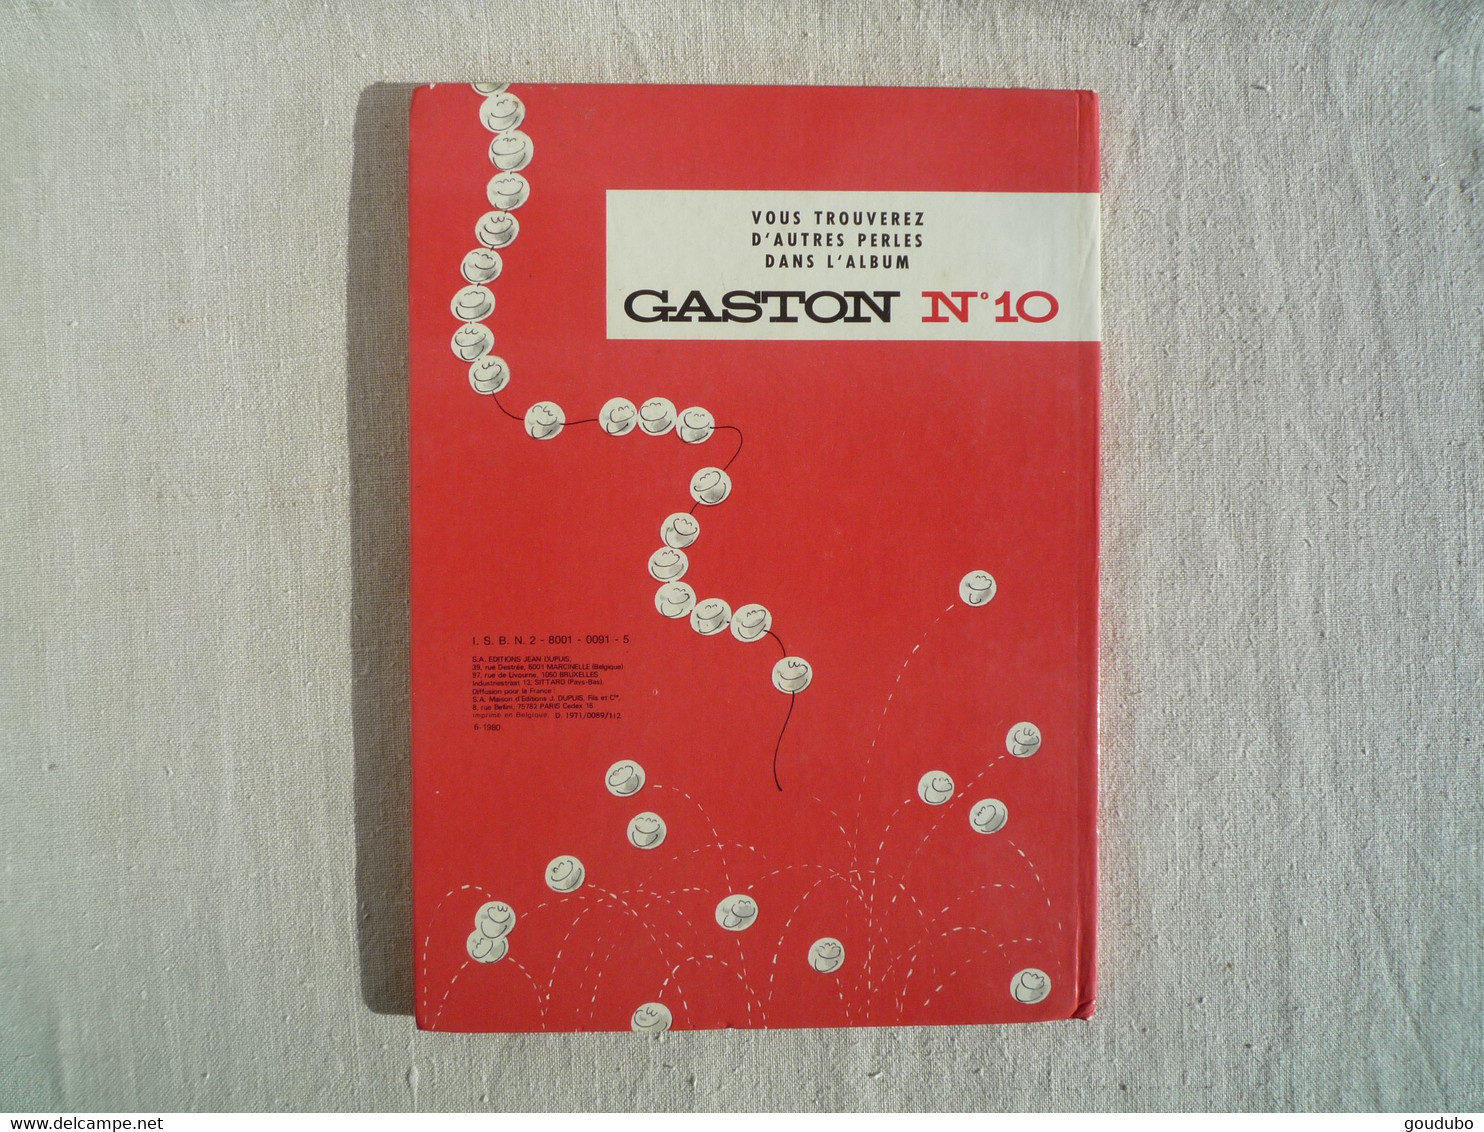 Le cas Lagaffe Gaston 9 Franquin Dupuis 1977.